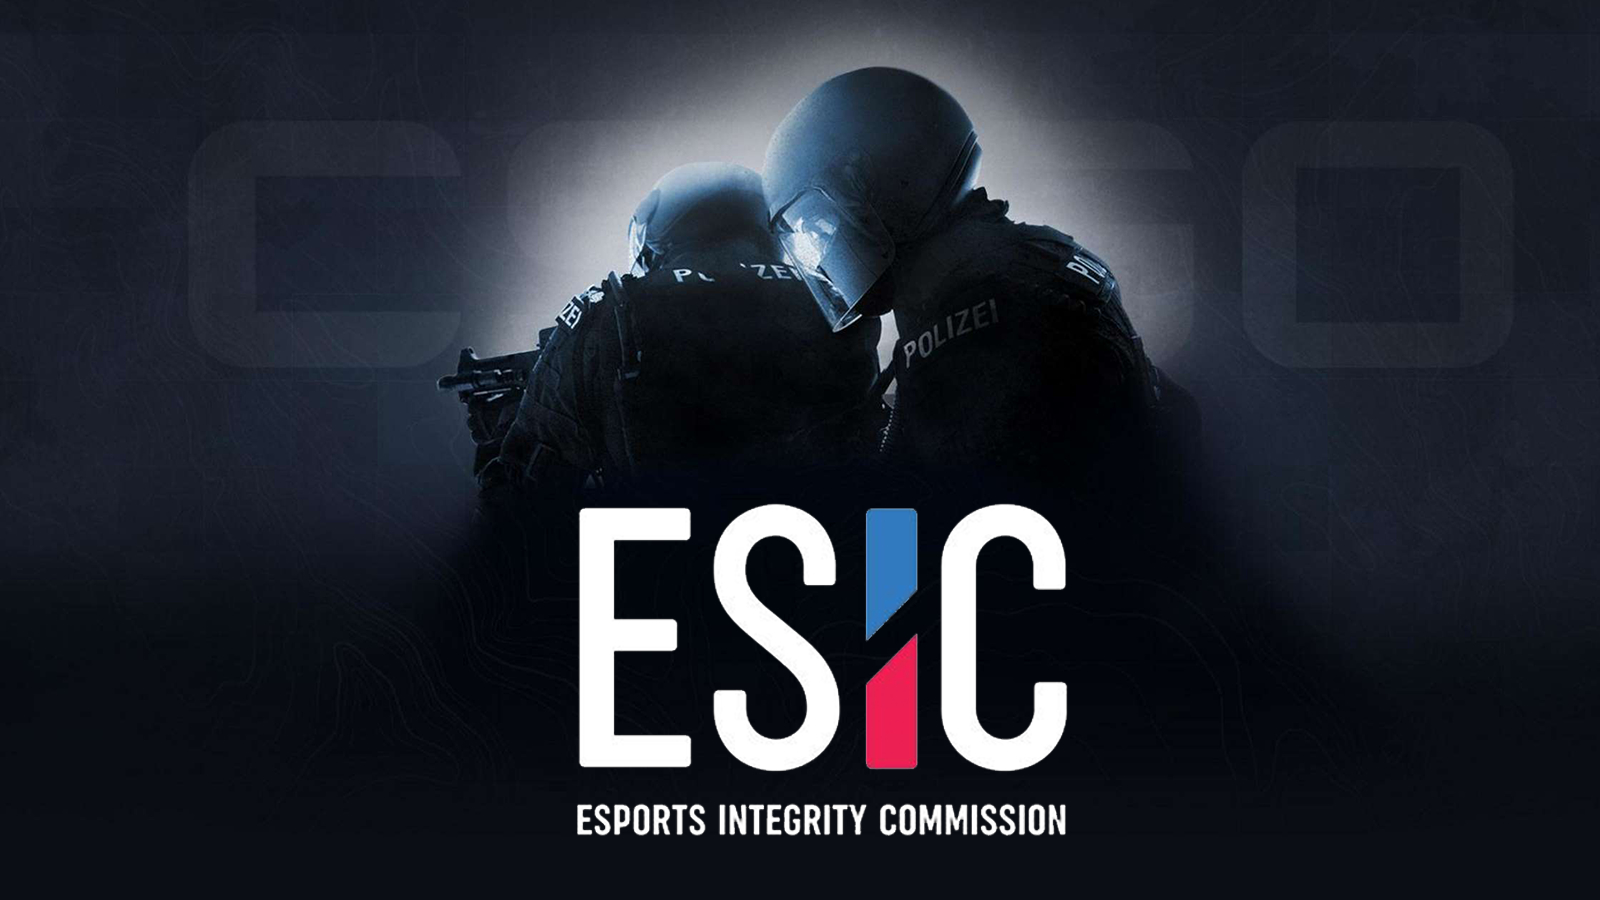 ESIC sperrt 35 weitere CSGO Counter-Strike-Spieler wegen Wettvergehen.